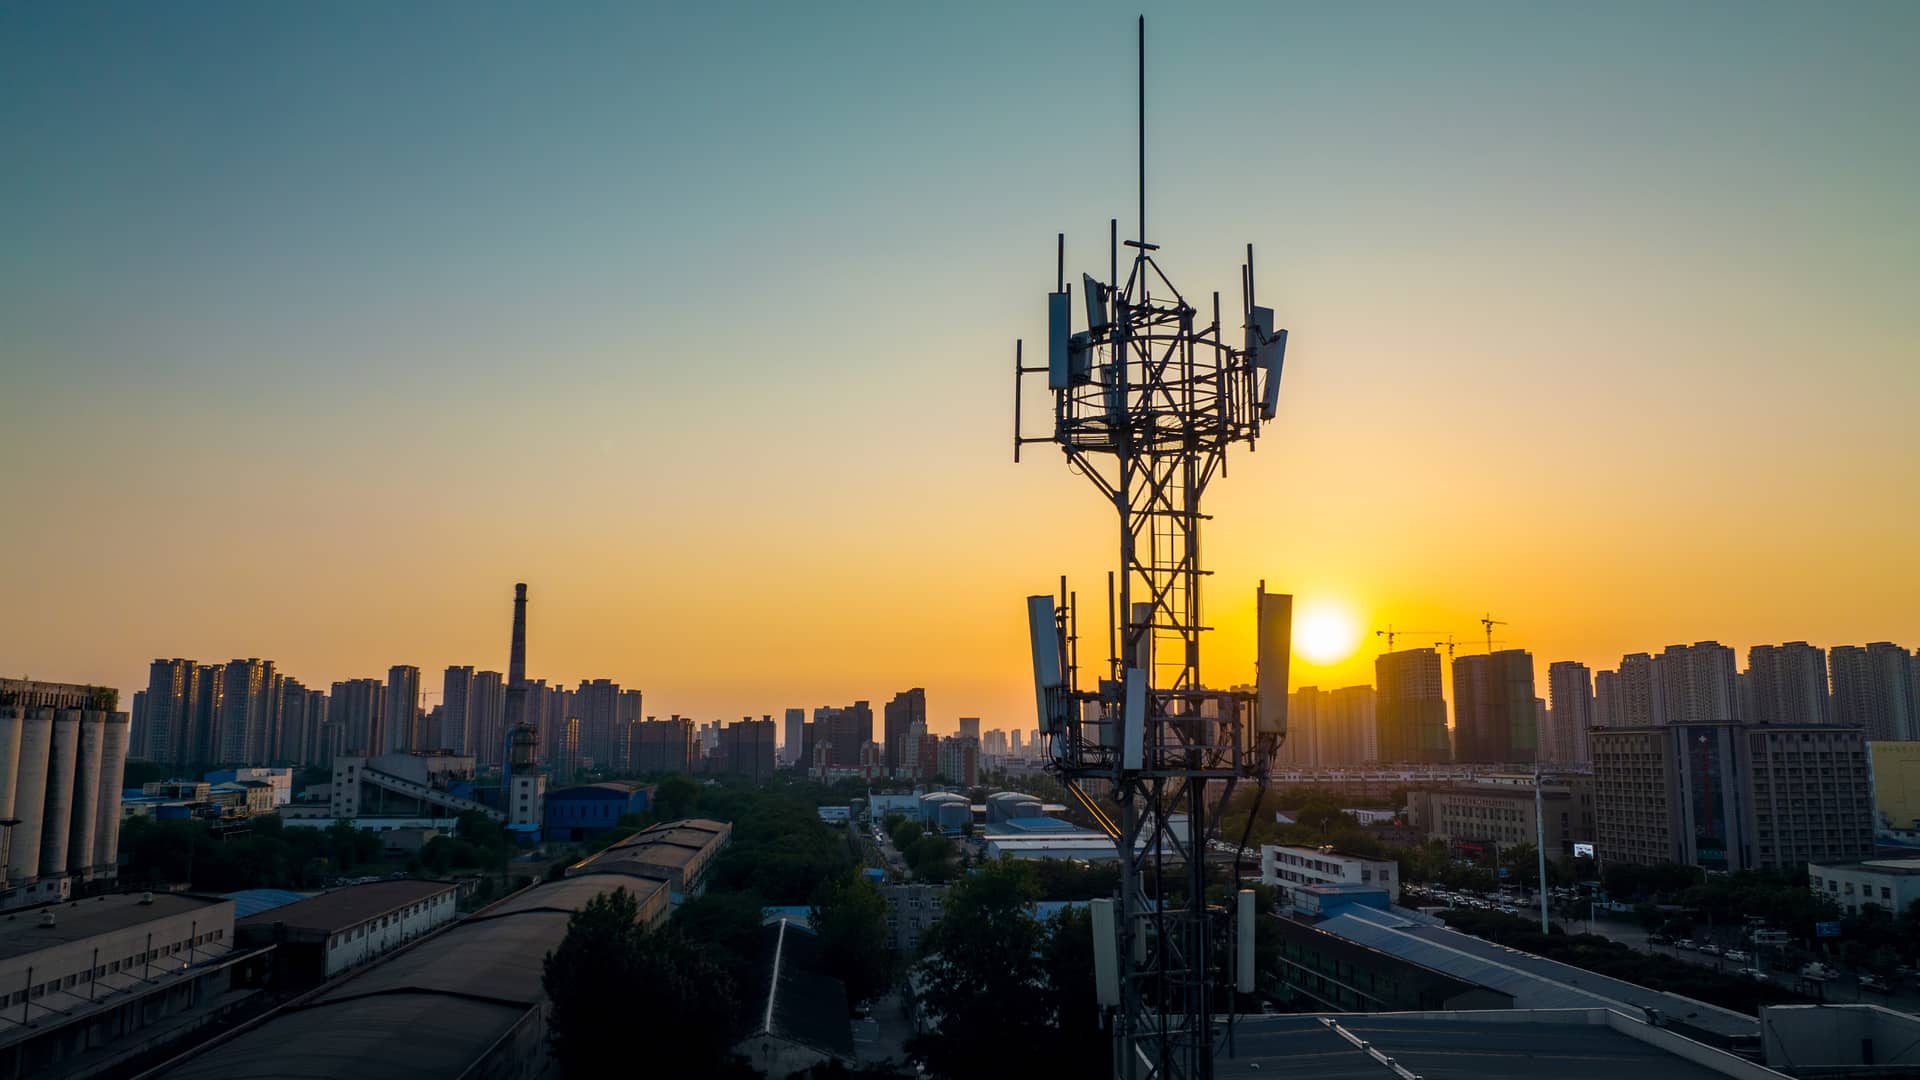 Torre de telecomunicaciones de redes celulares que representan la cobertura de megacable